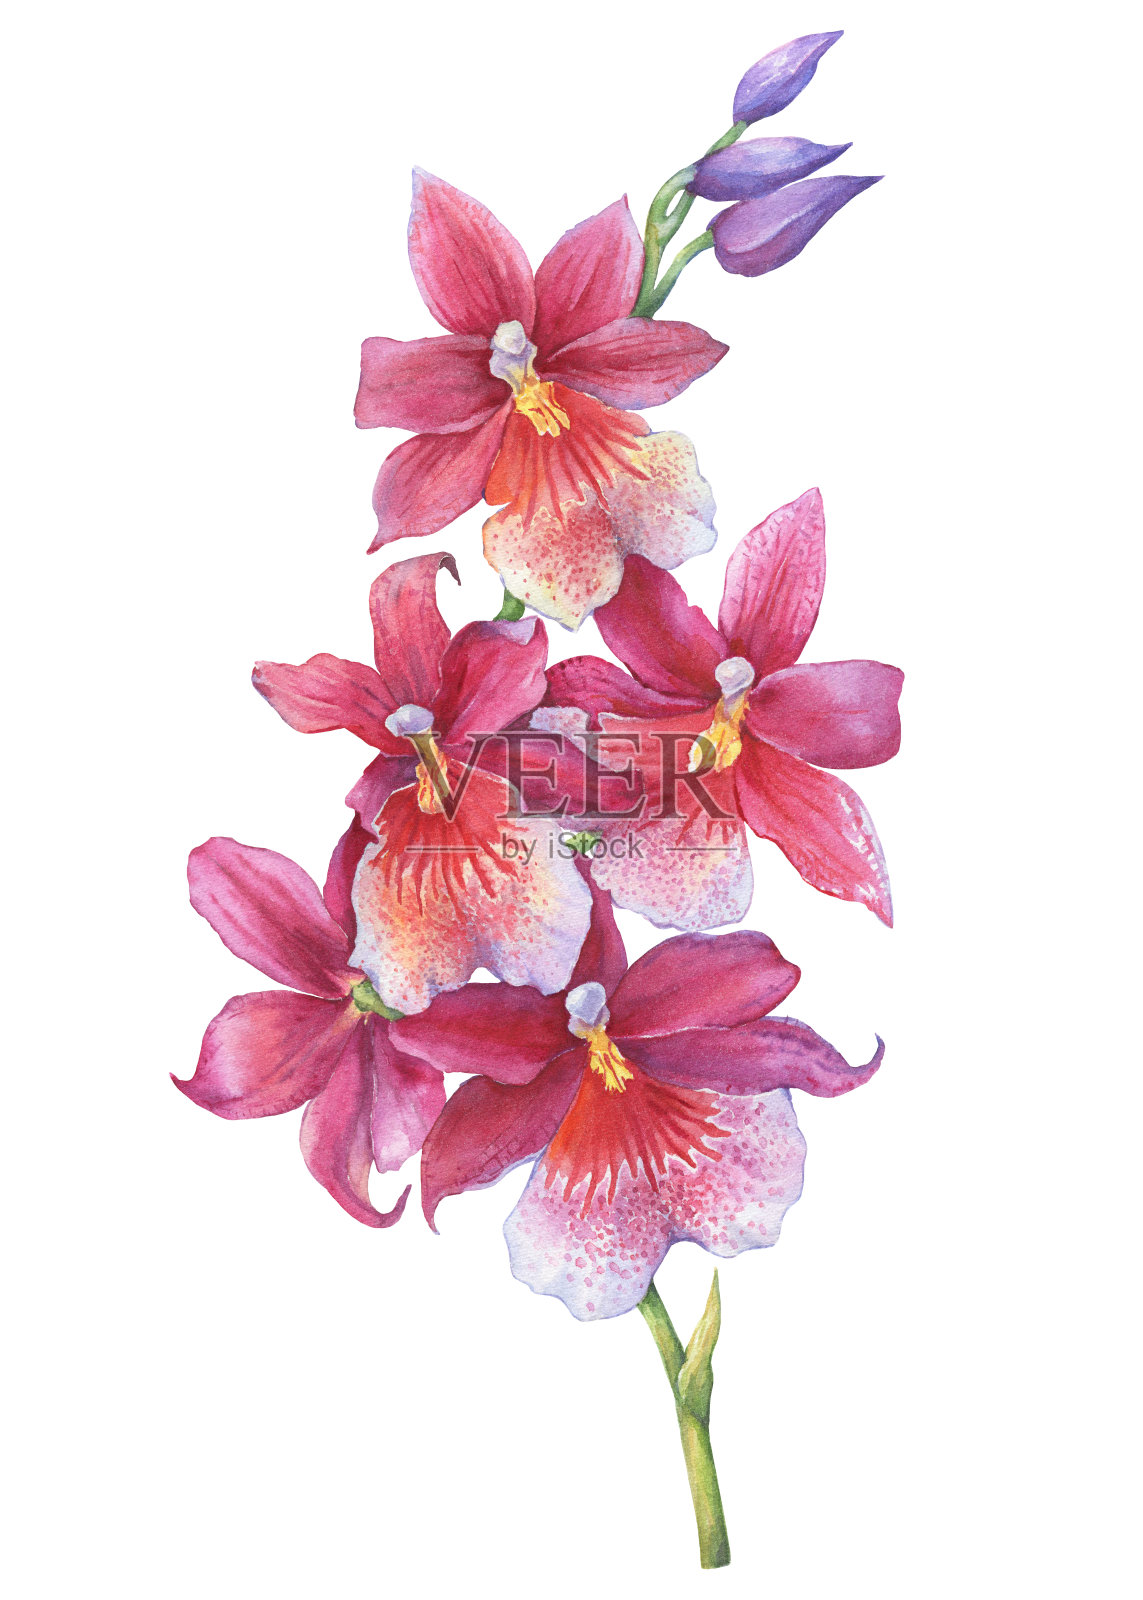 兰花:开花的热带粉红色兰花的一枝。近距离杂交兰花。手绘水彩画插图孤立在一个白色的背景。插画图片素材